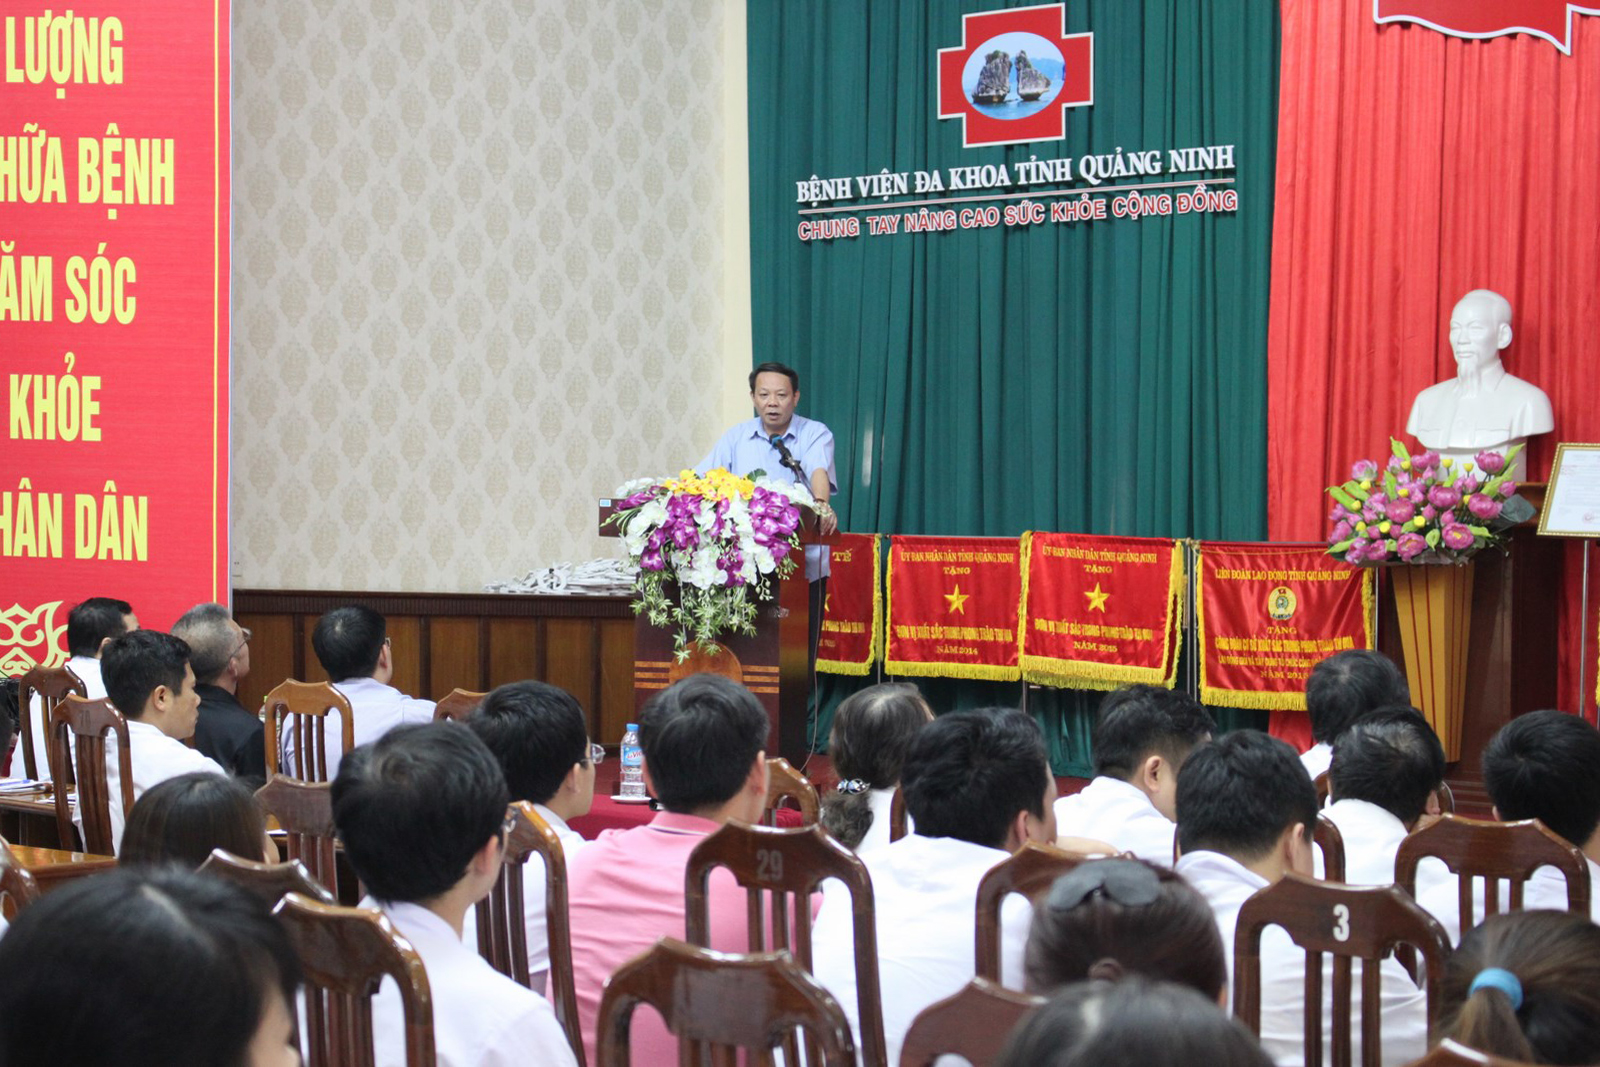 Tập huấn triển khai phần mềm quản lý chẩn đoán hình ảnh (PACS) tại BVĐK tỉnh Quảng Ninh